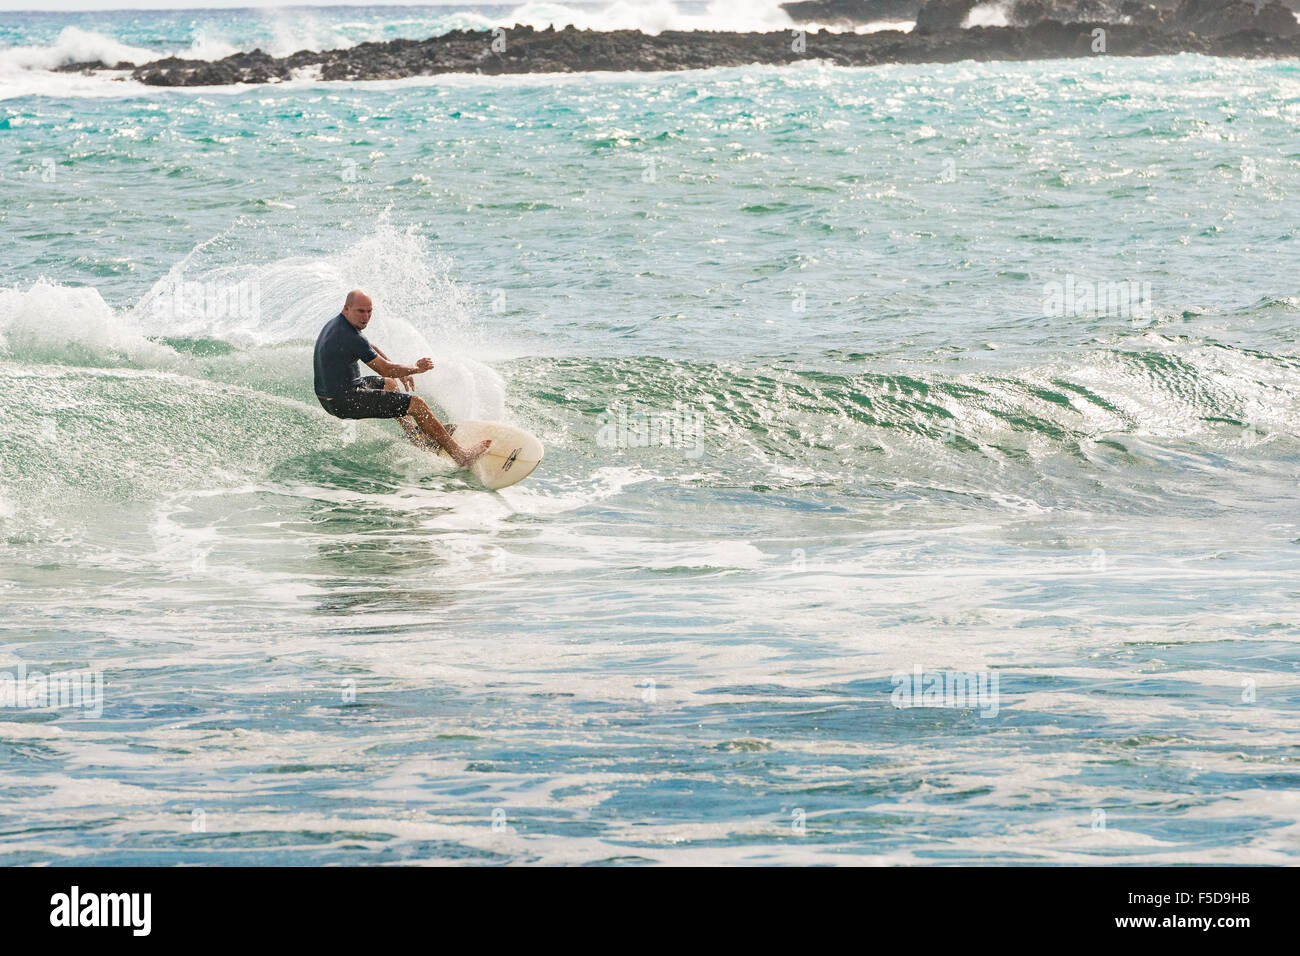 Surfer at La Perouse Bay, Maui, Hawaii Stock Photo